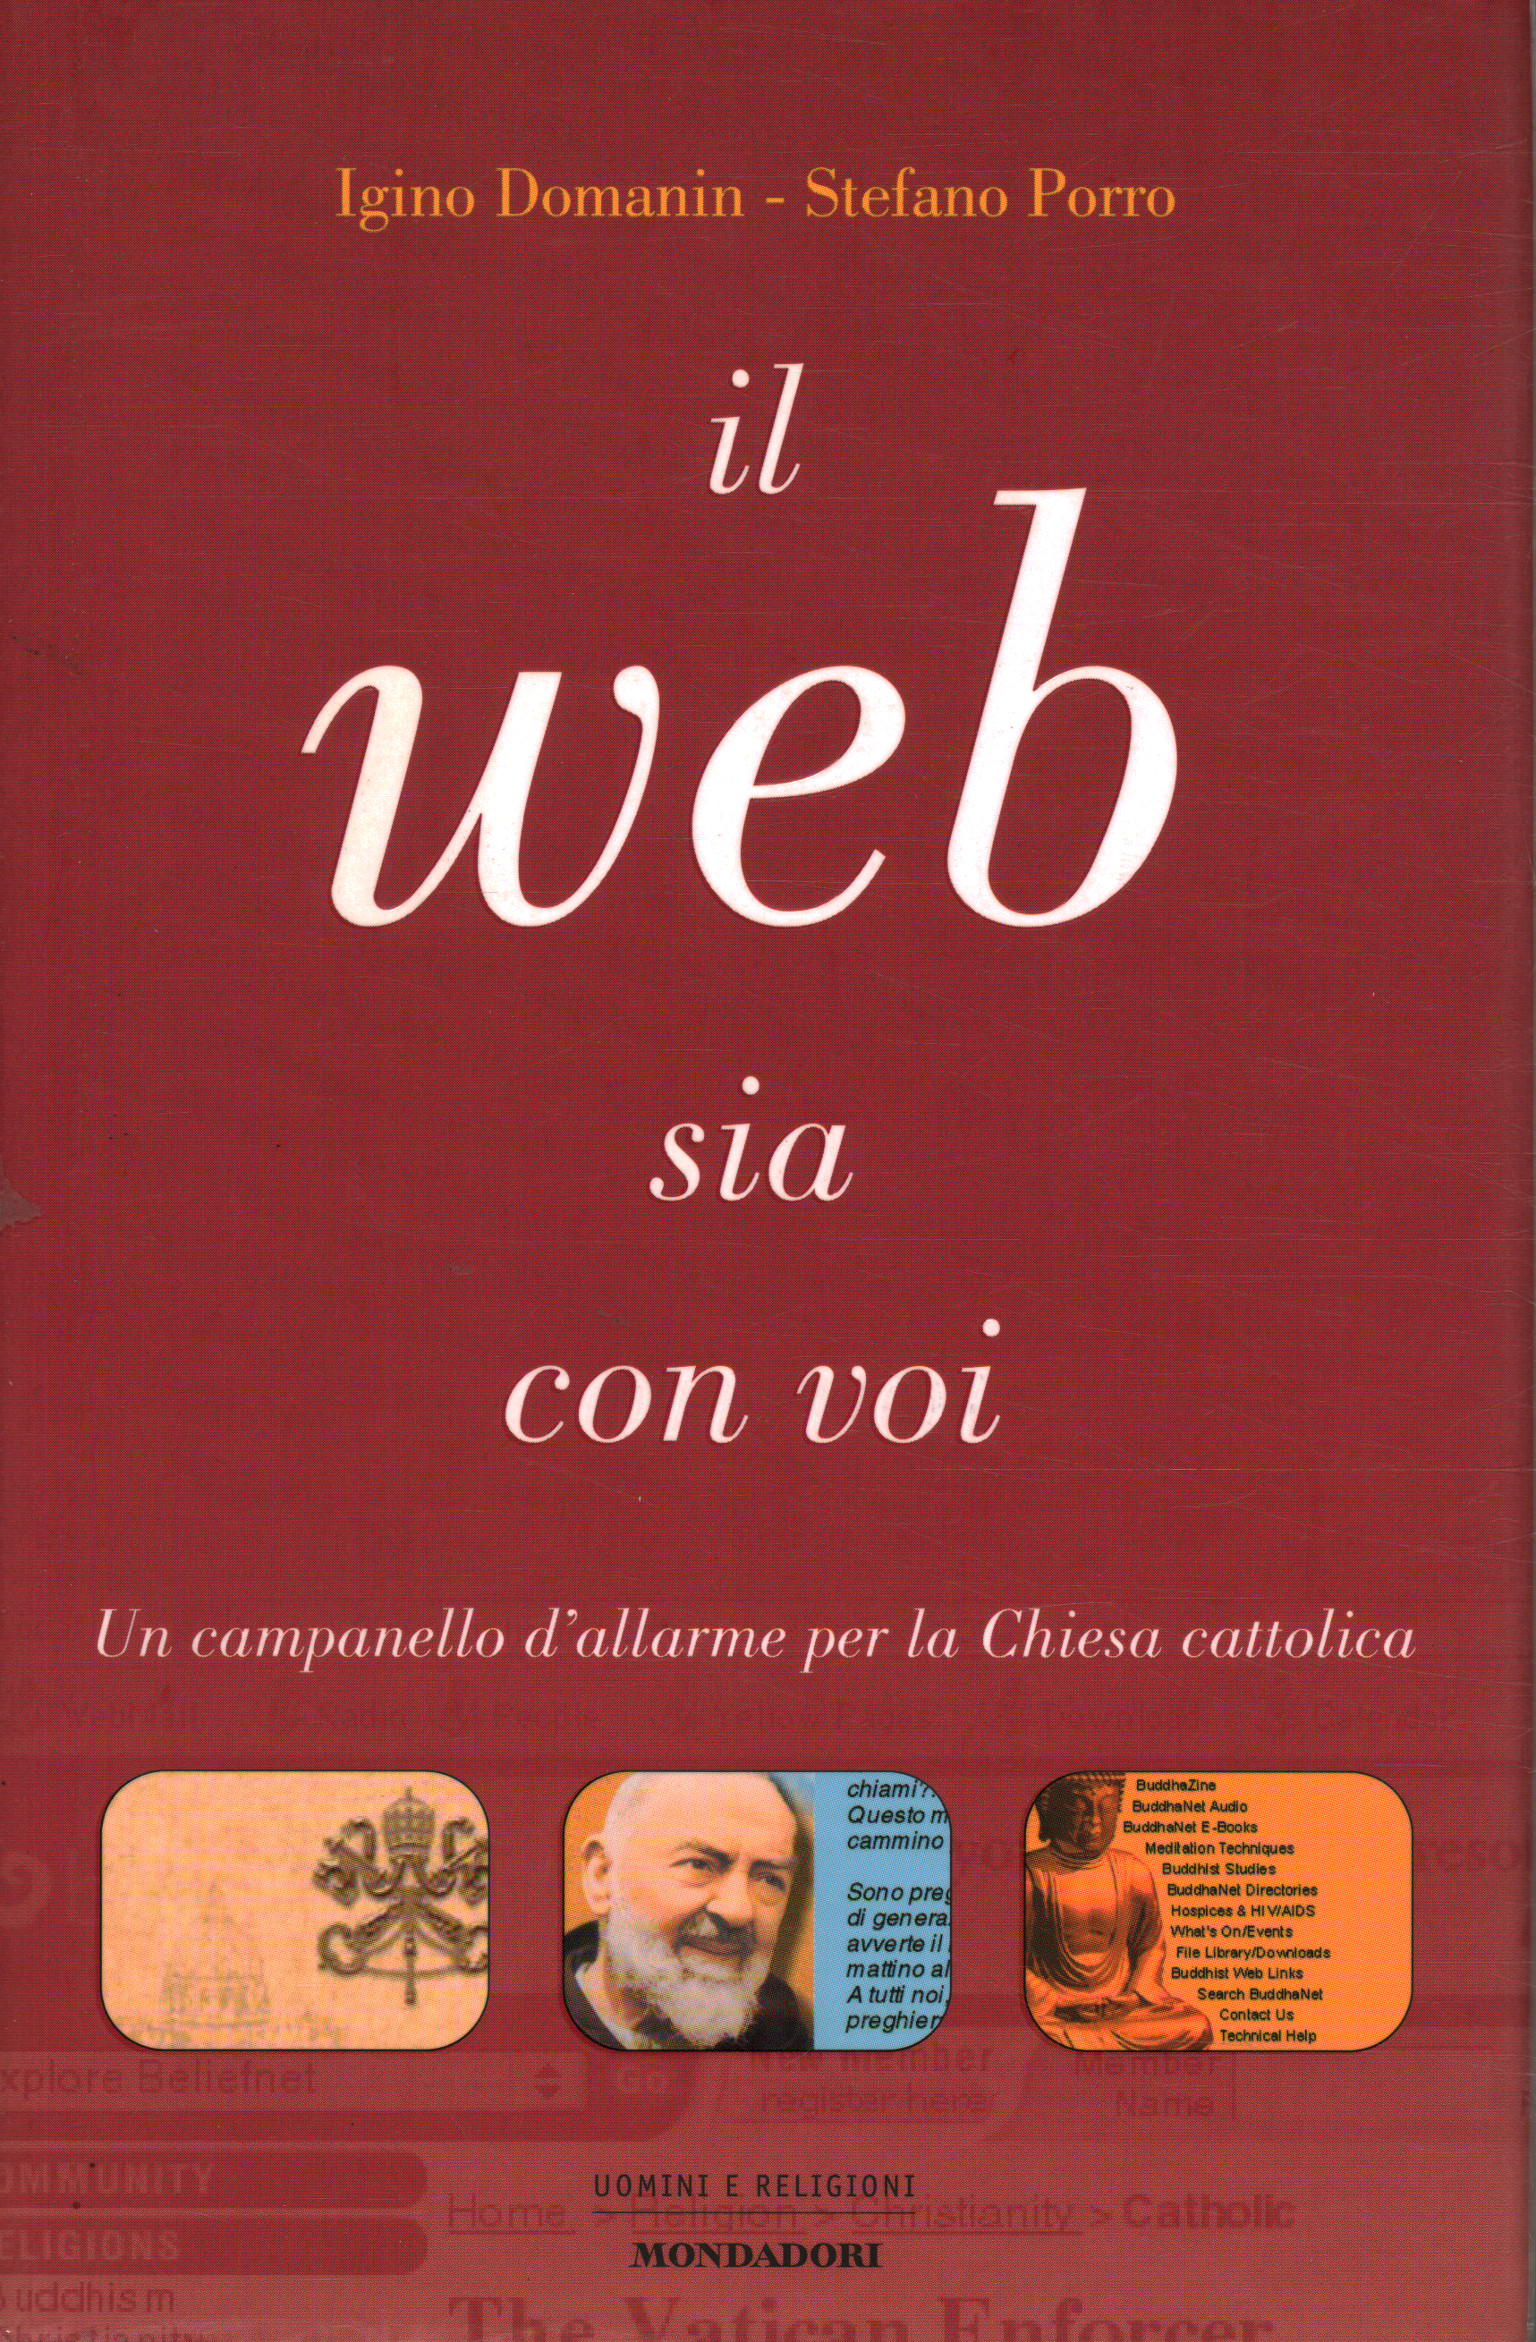 The web be with you, Igino Domanin Stefano Porro